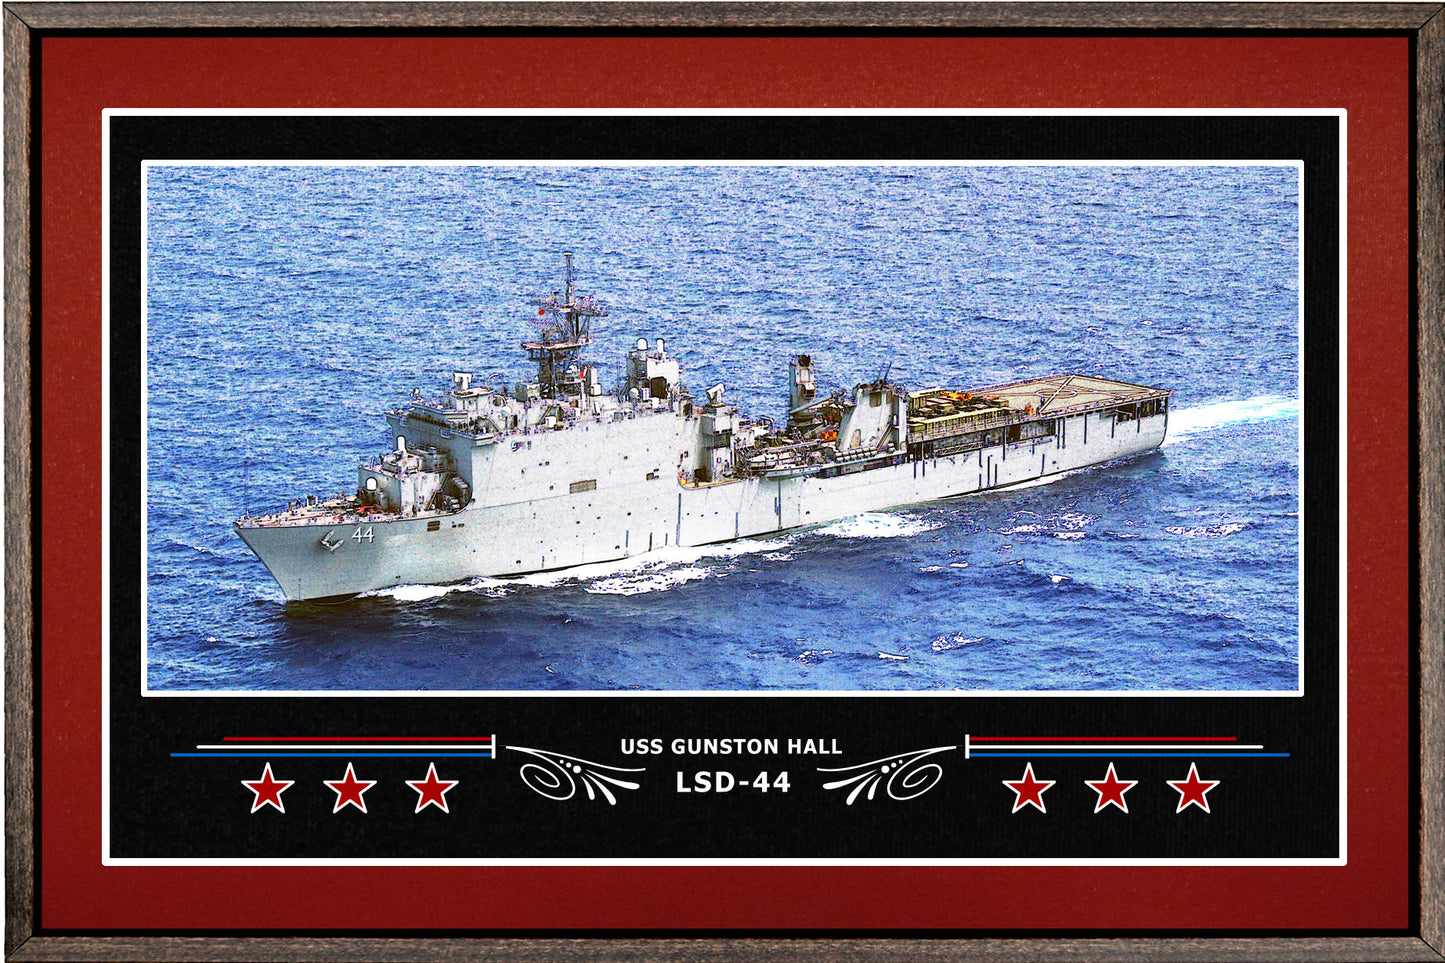 USS GUNSTON HALL LSD 44 BOX FRAMED CANVAS ART BURGUNDY